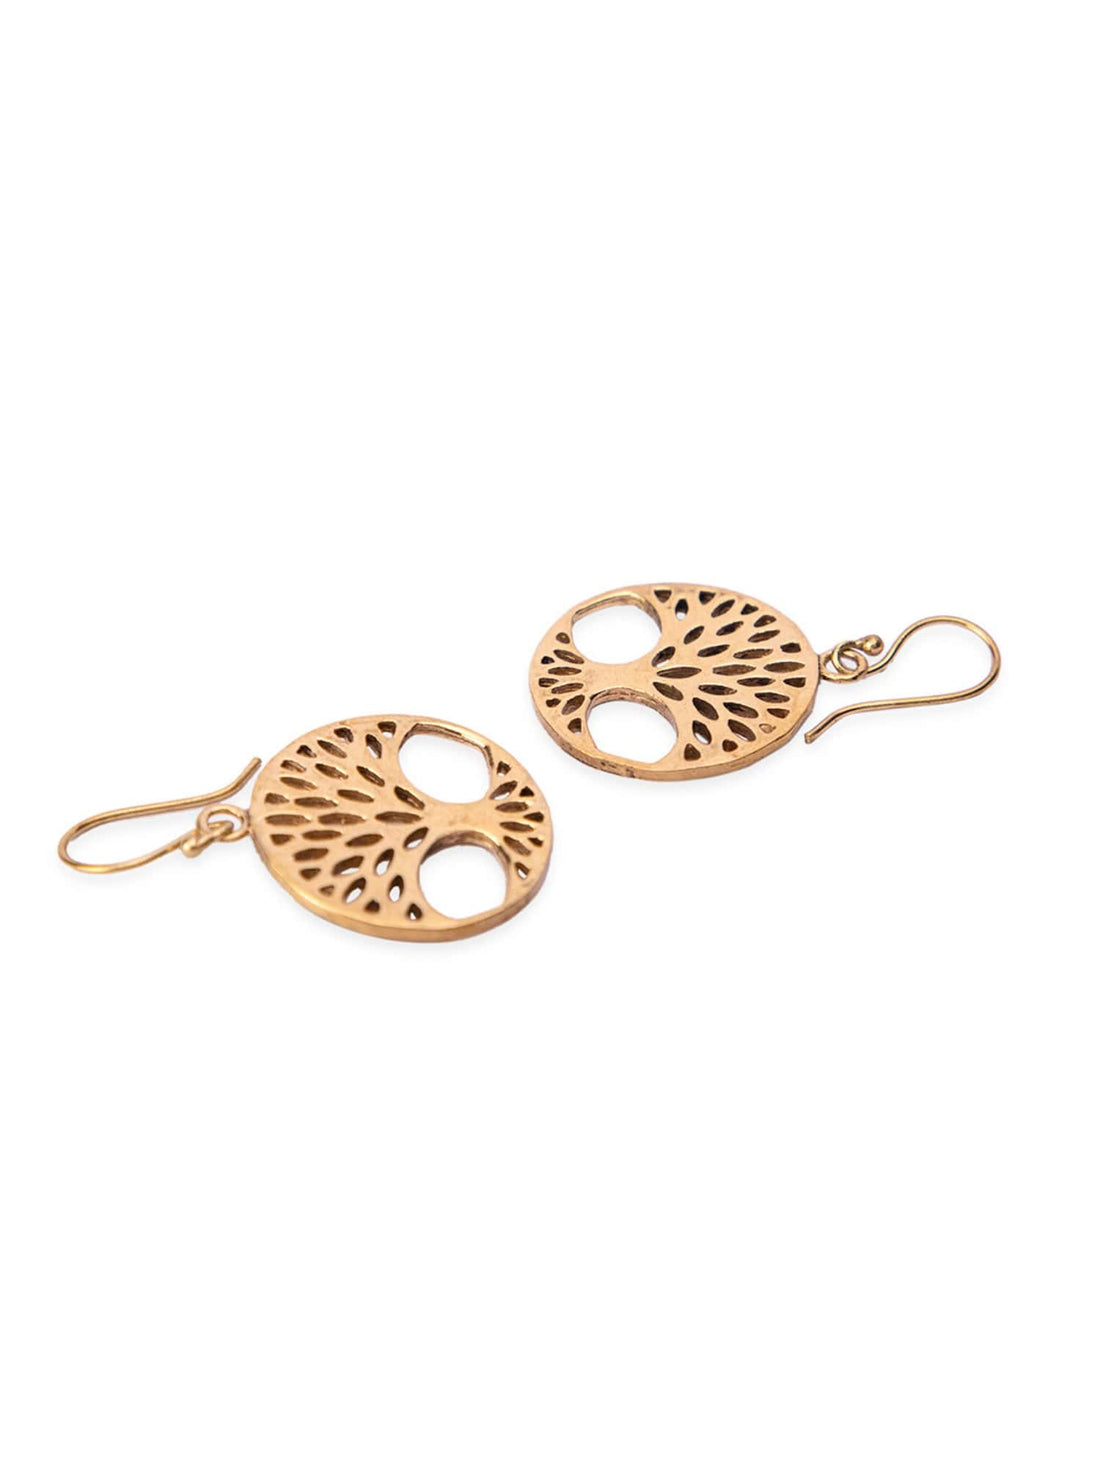 Daily Wear Drops & Danglers Earrings - Western Gold-Plated Brass Earrings By Studio One Love